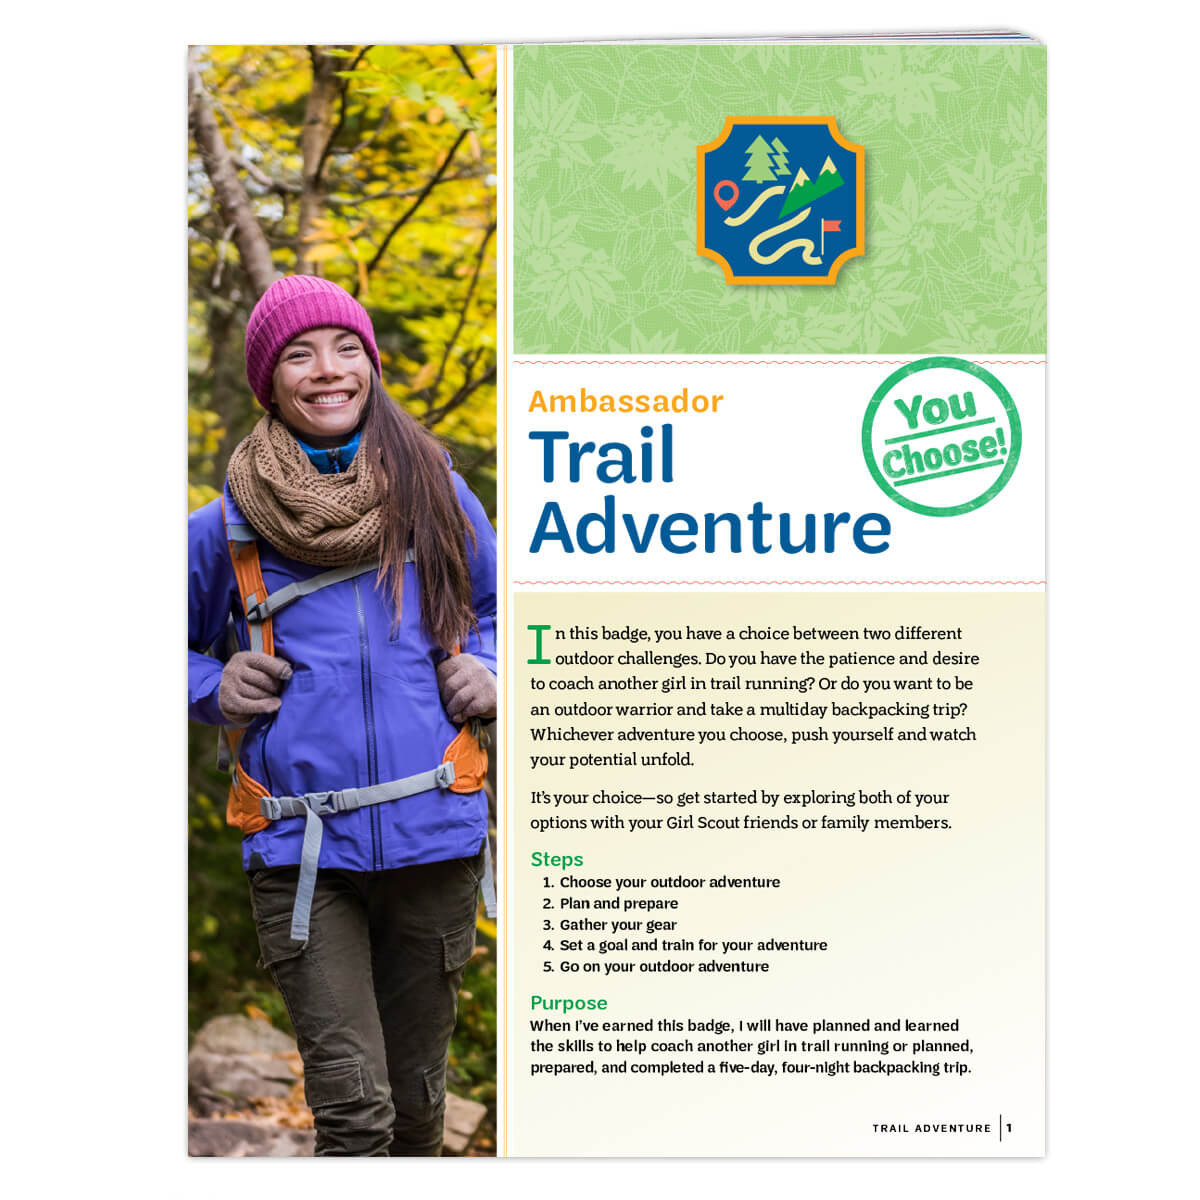 Amb. Trail Adventure REQ